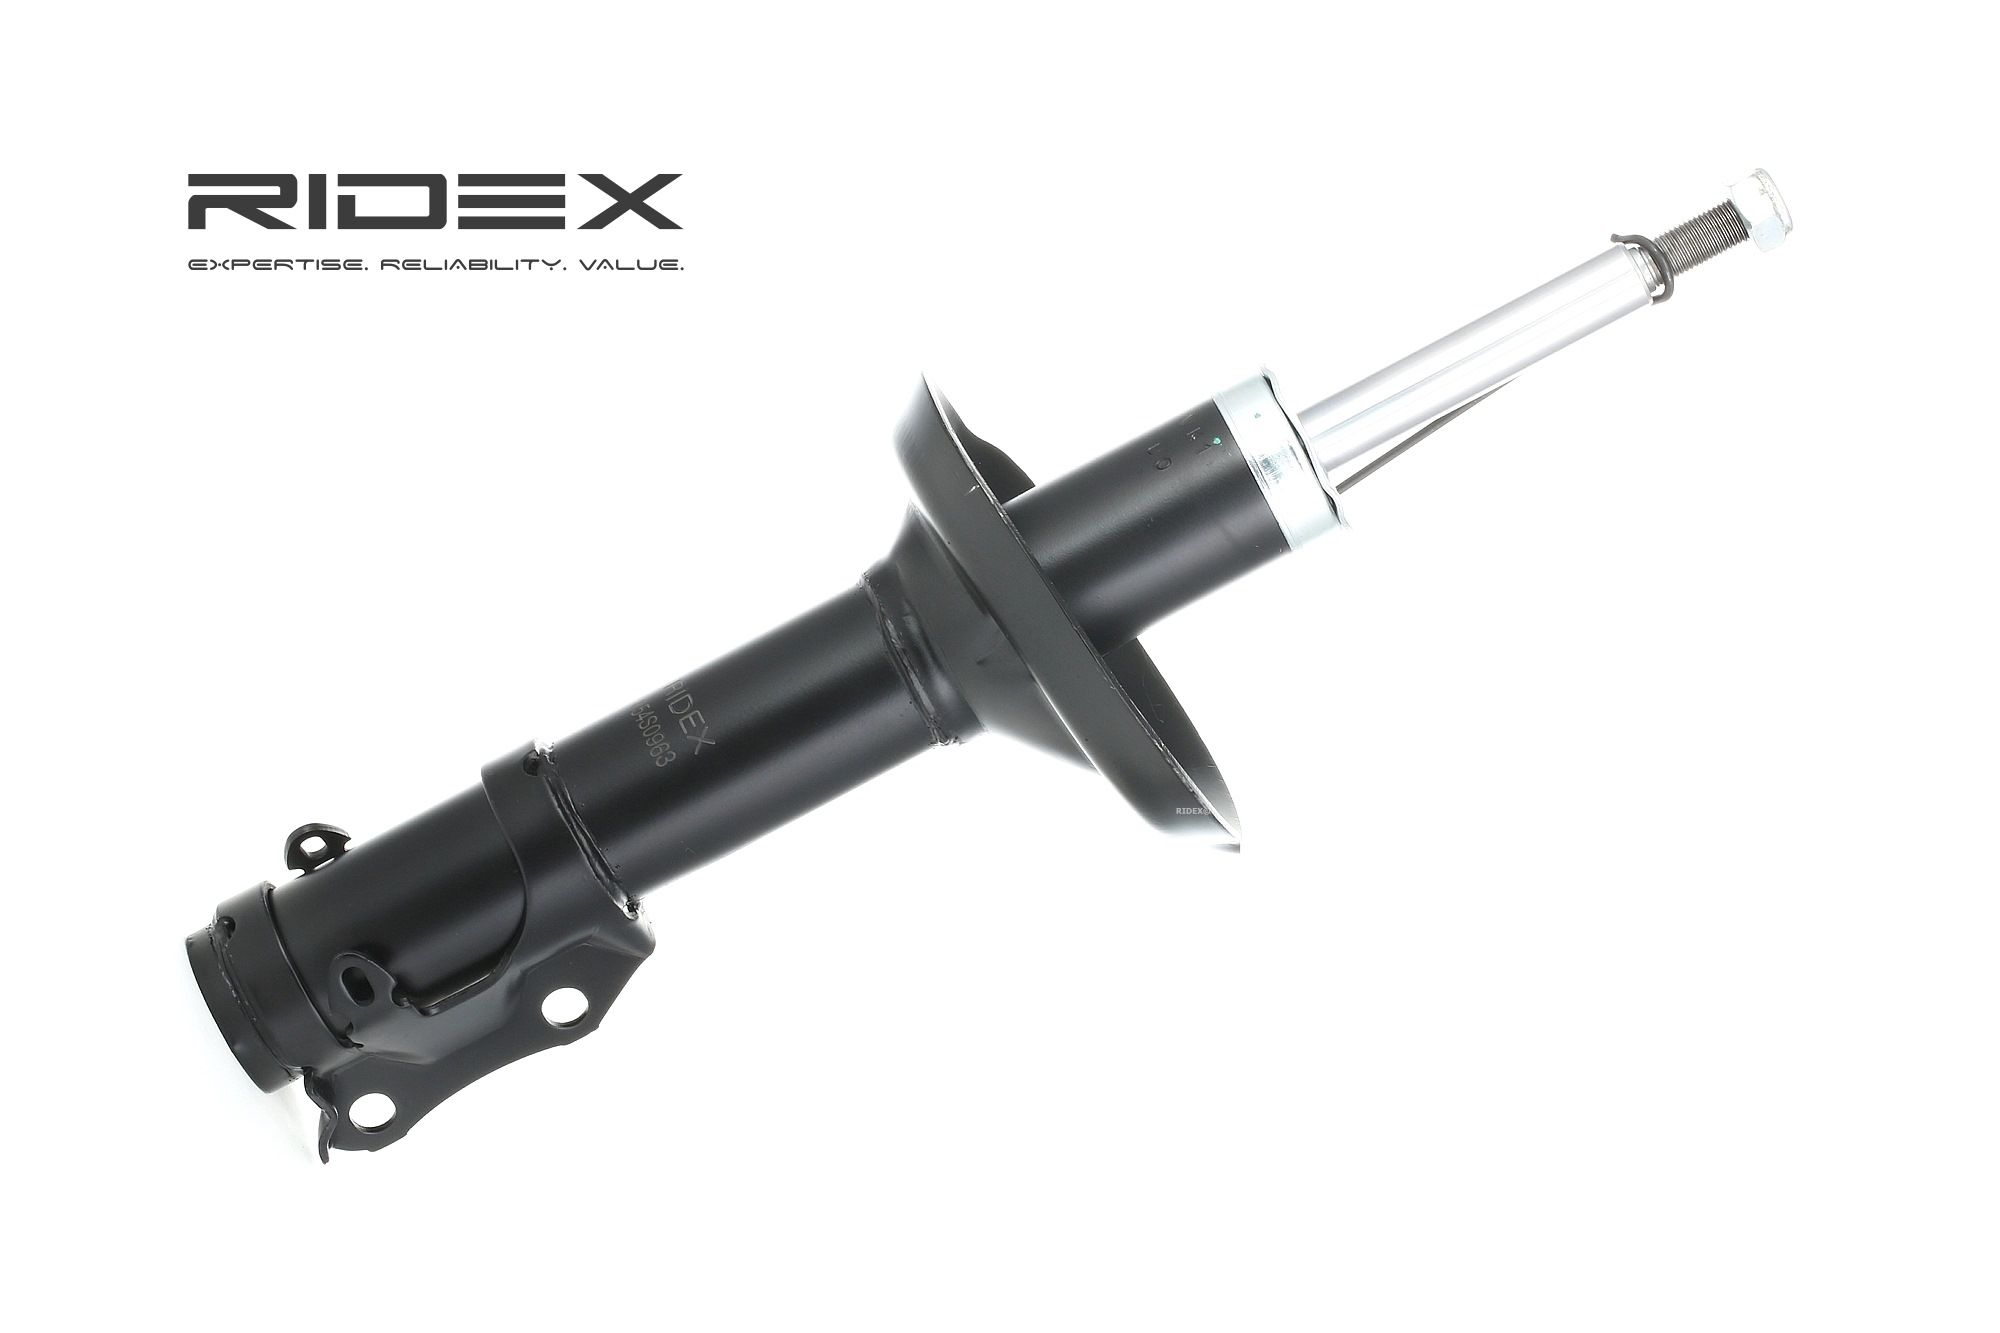 RIDEX 854S0609 originali RENAULT MEGANE 2021 Kit ammortizzatori Assale anteriore, A pressione del gas, A doppio tubo, Ammortizzatore tipo McPherson, Collare inferiore, Spina superiore